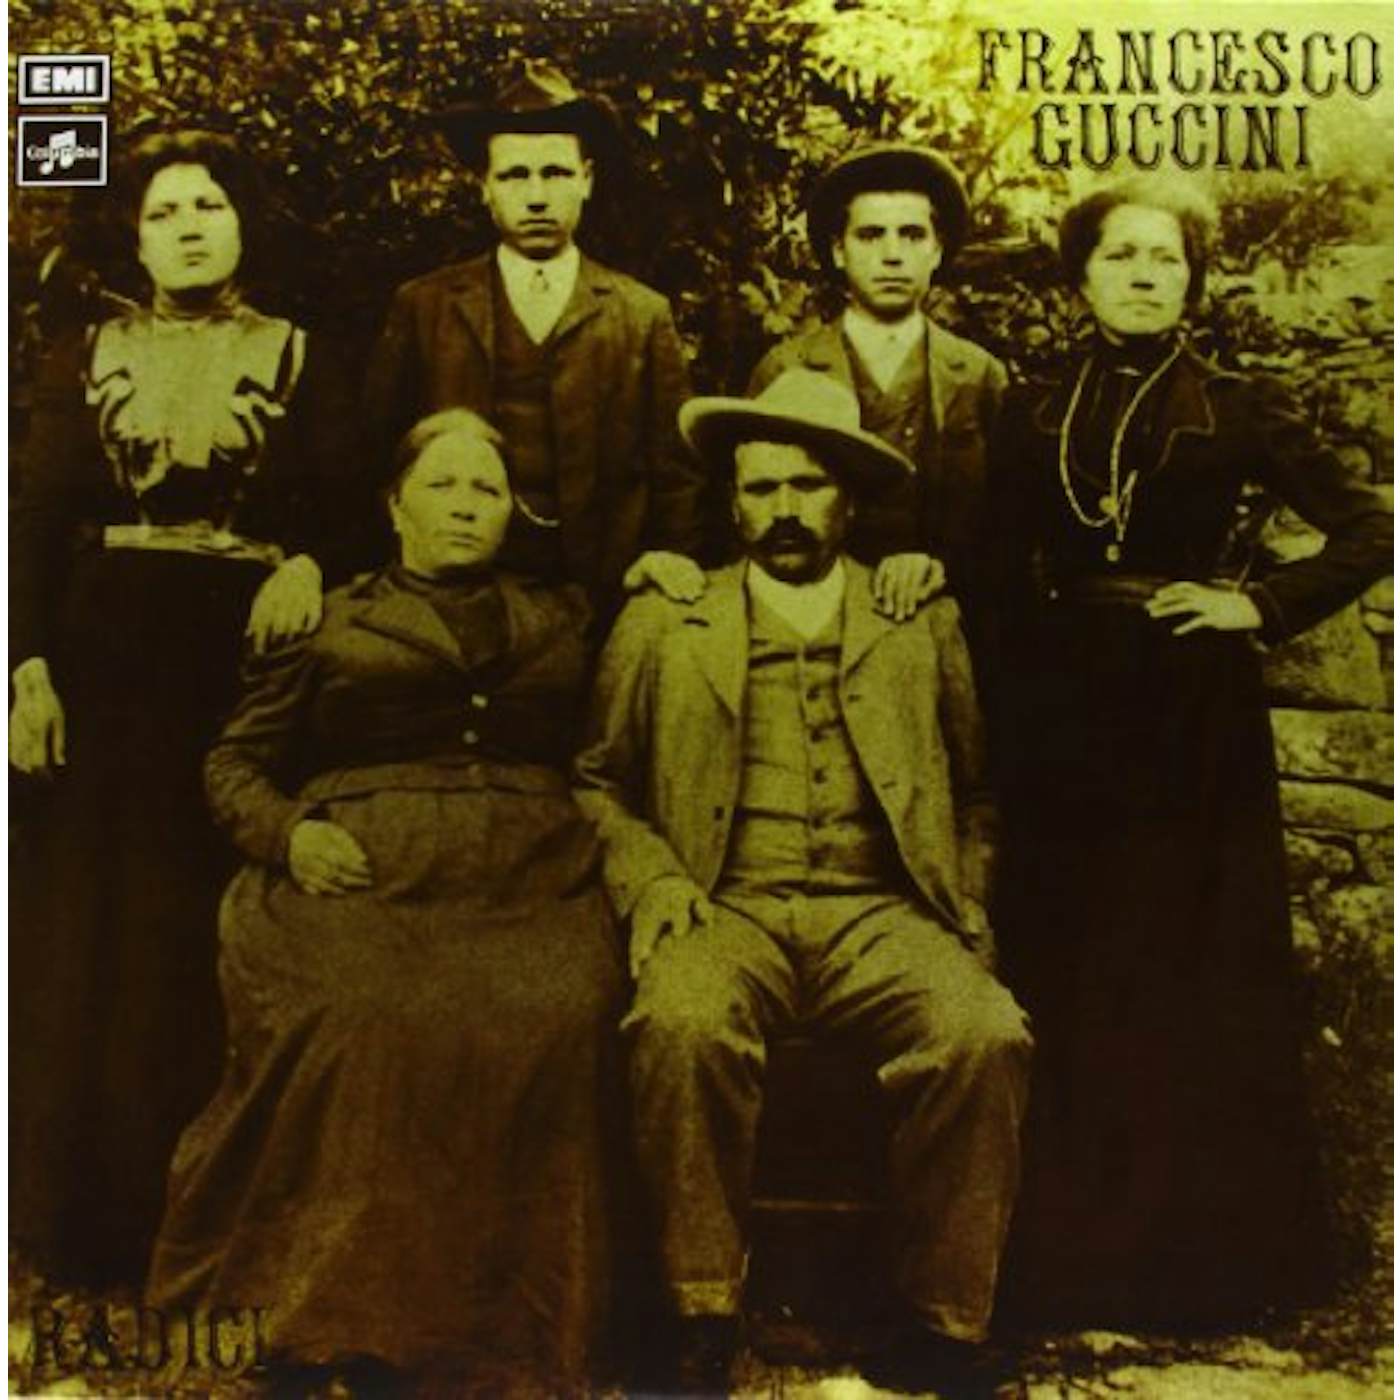 Francesco Guccini Radici Vinyl Record